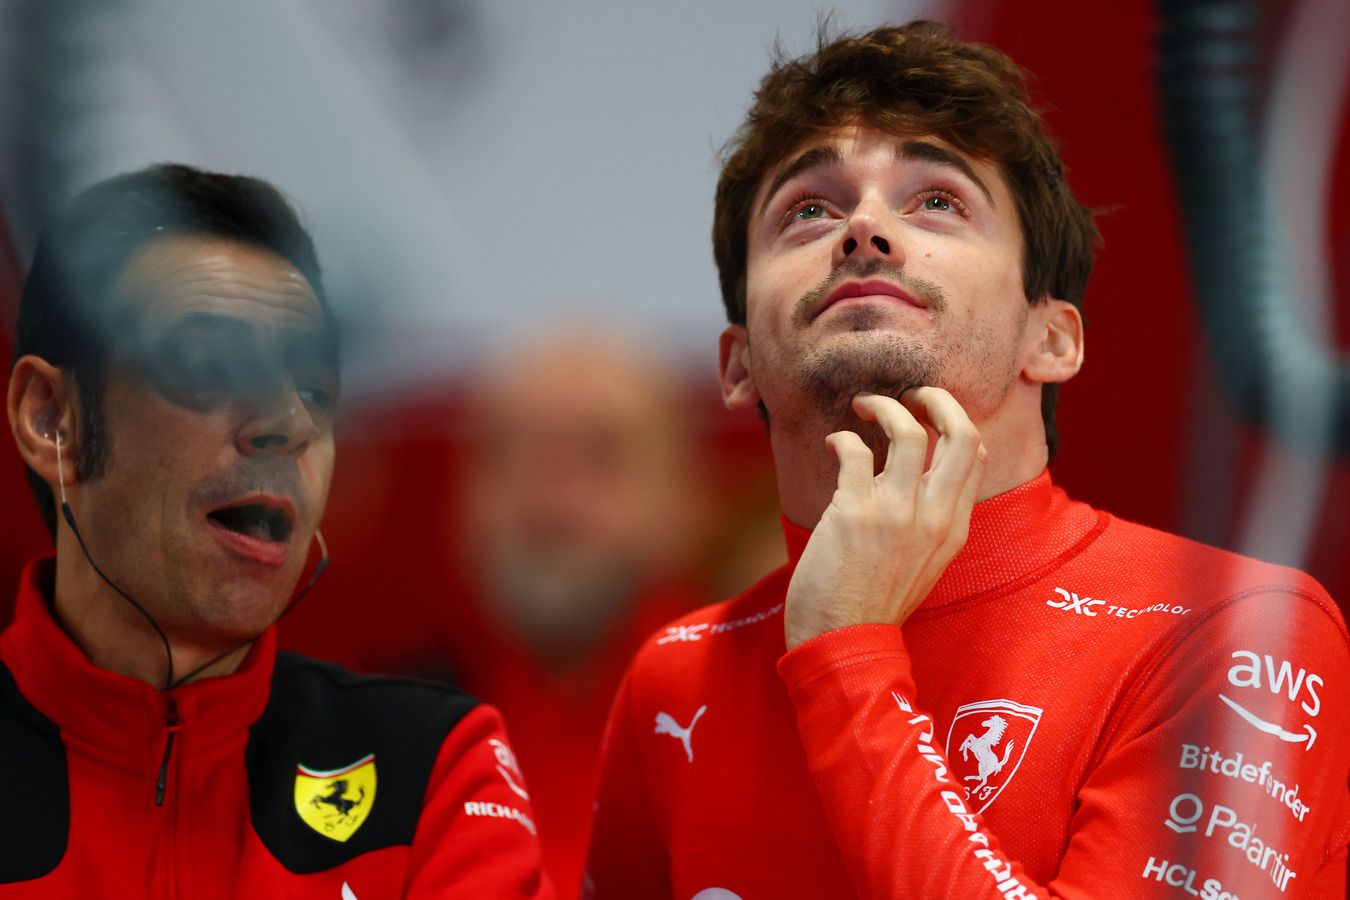 Леклер рассказал, что из-за слёз с трудом видел трассу в гонке Гран-при Монако